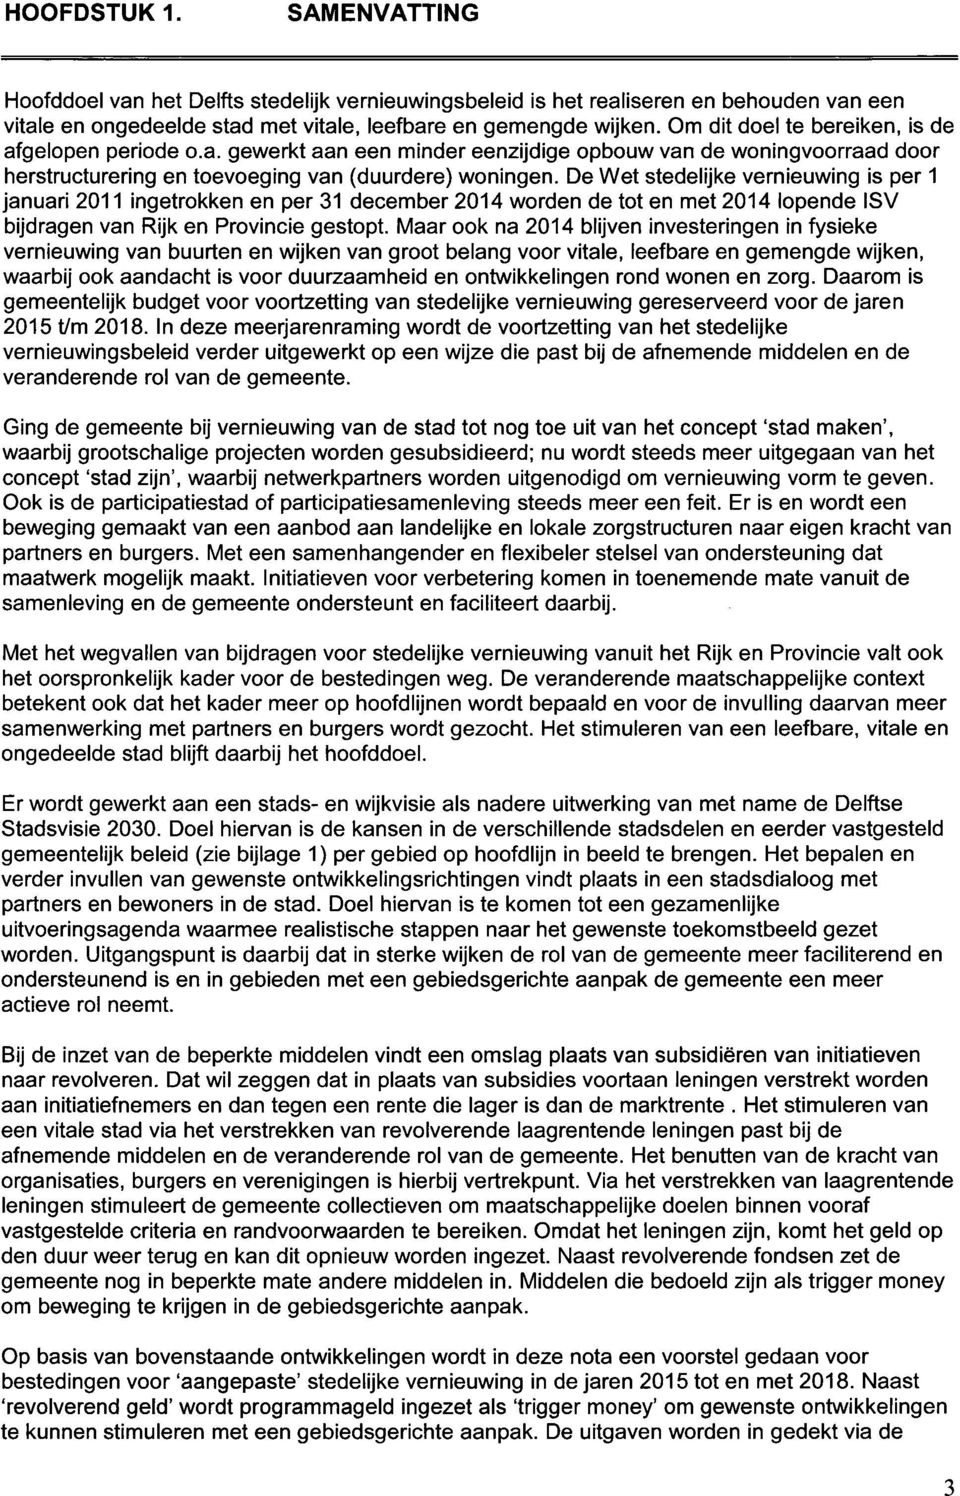 De Wet stedelijke vernieuwing is per 1 januari 2011 ingetrokken en per 31 december 2014 worden de tot en met 2014 lopende ISV bijdragen van Rijk en Provincie gestopt.